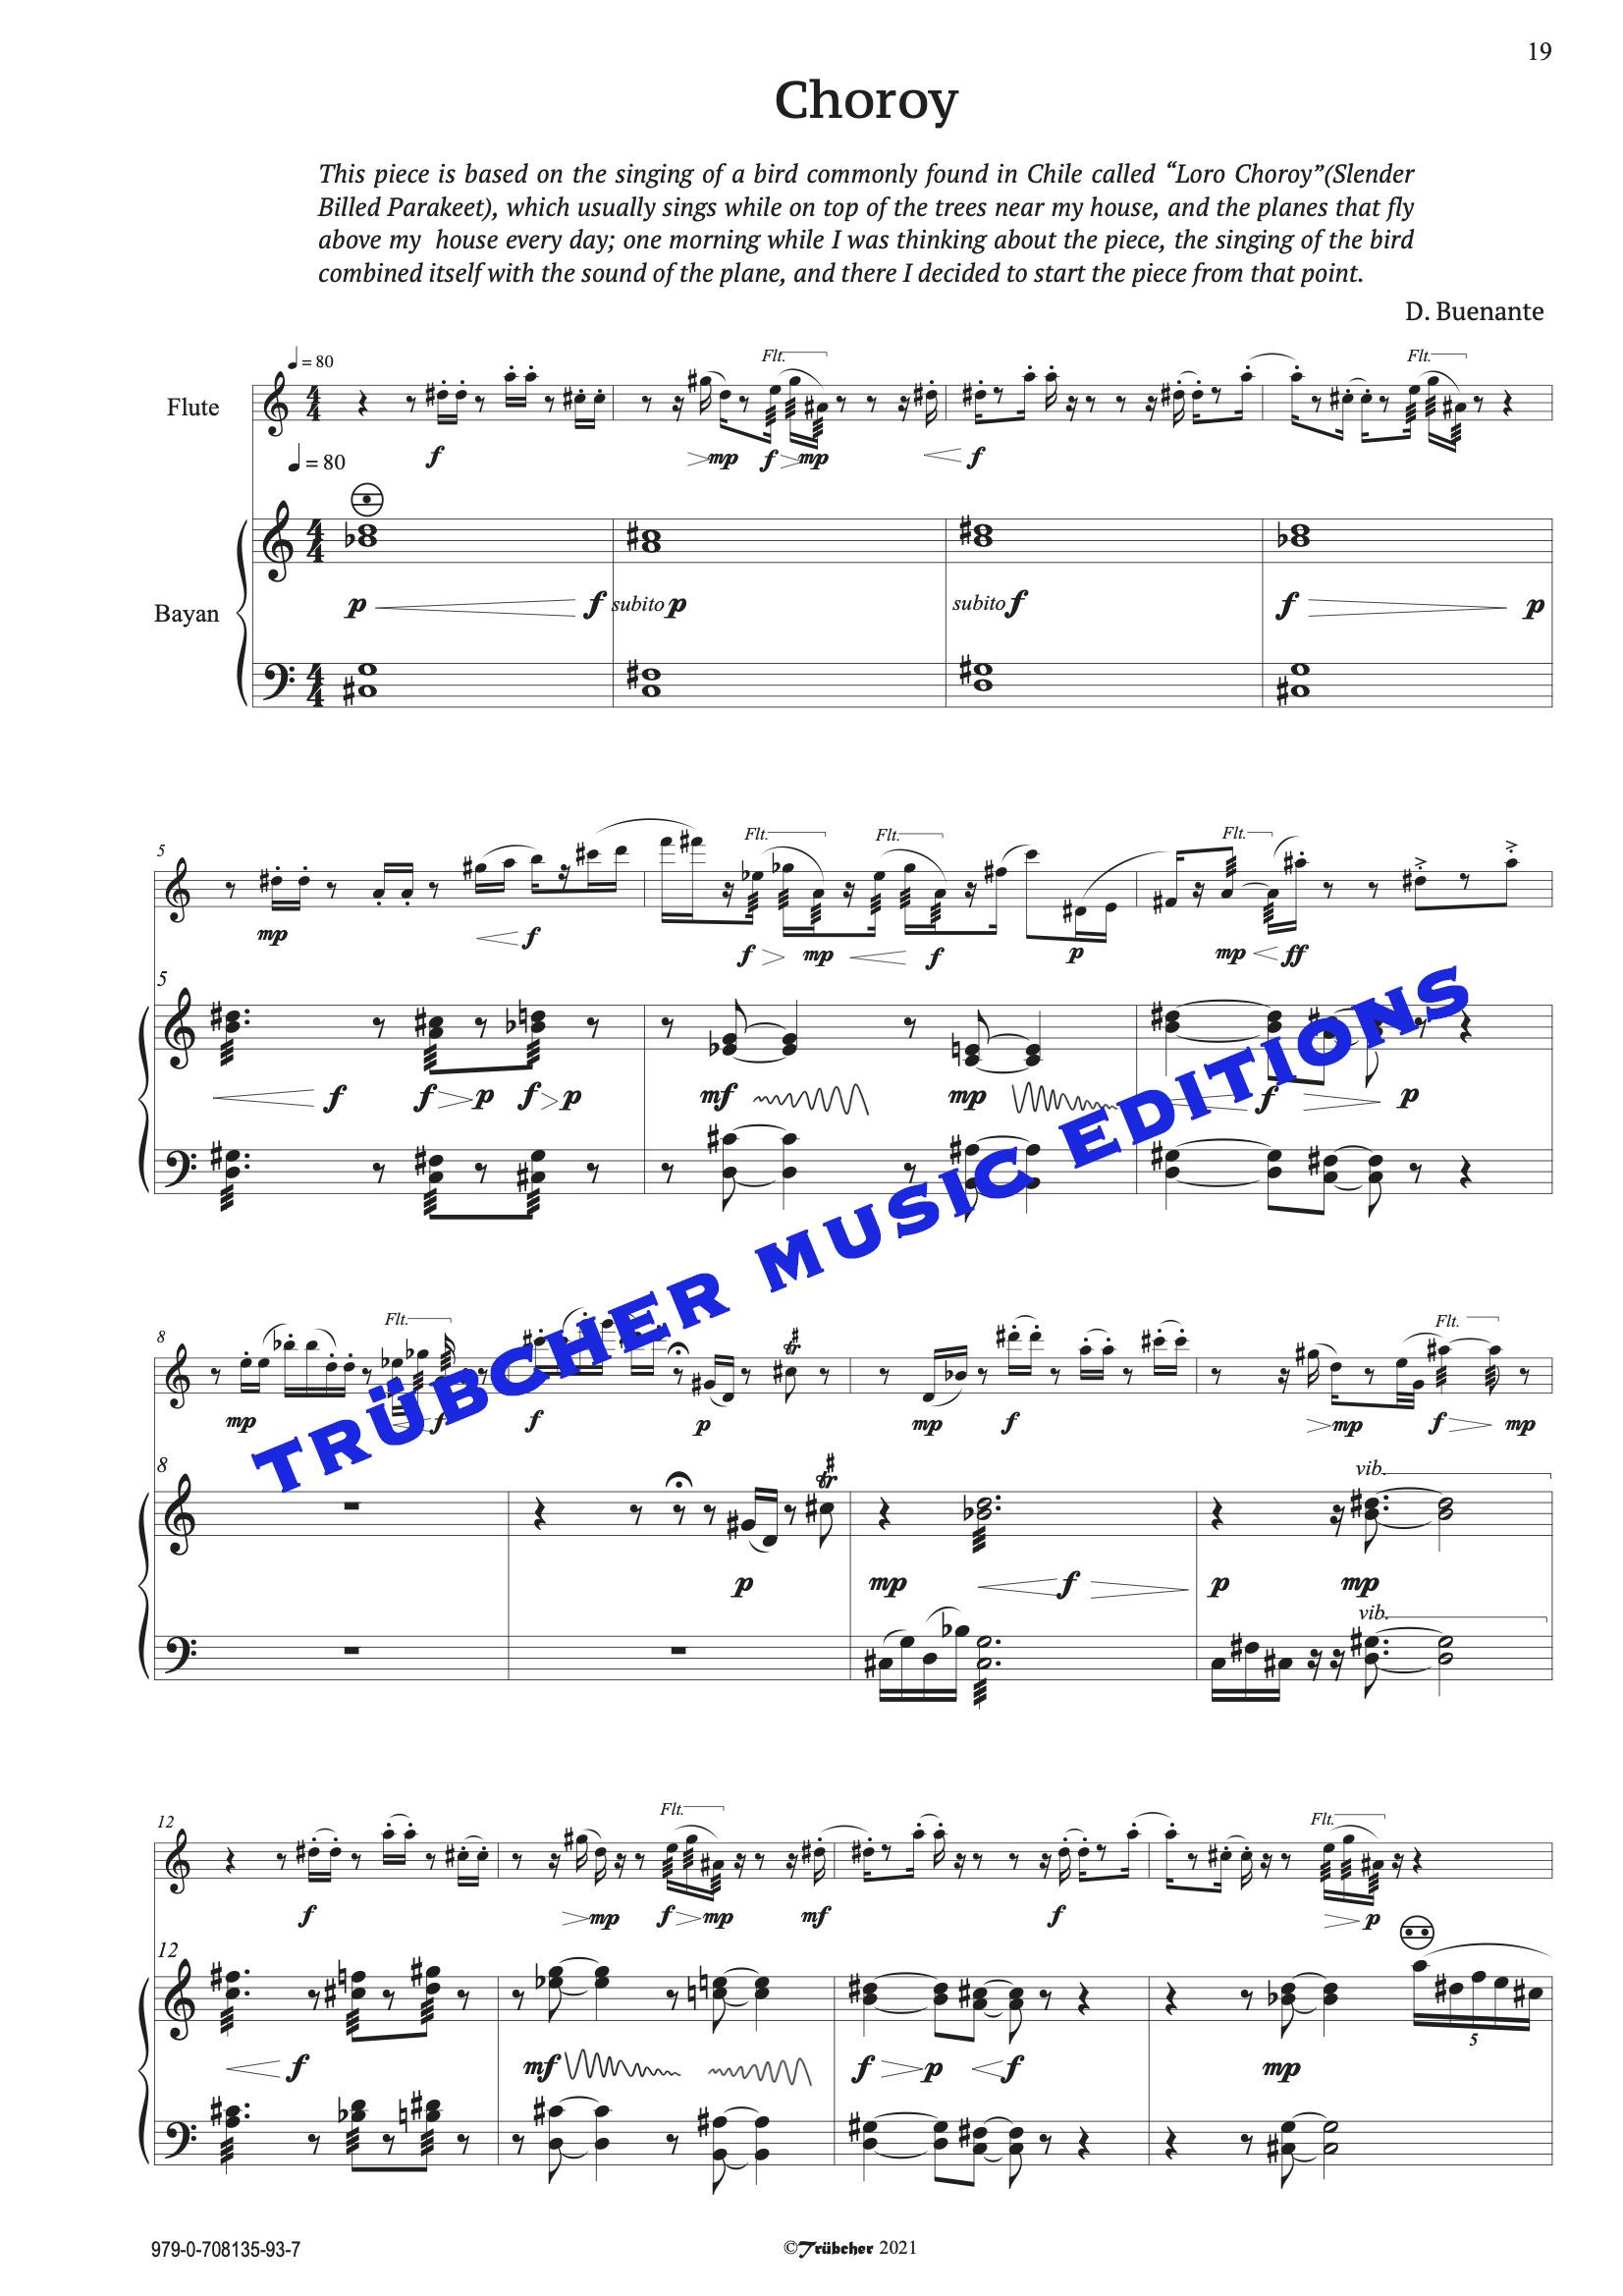 flute & bayan duet sheet music